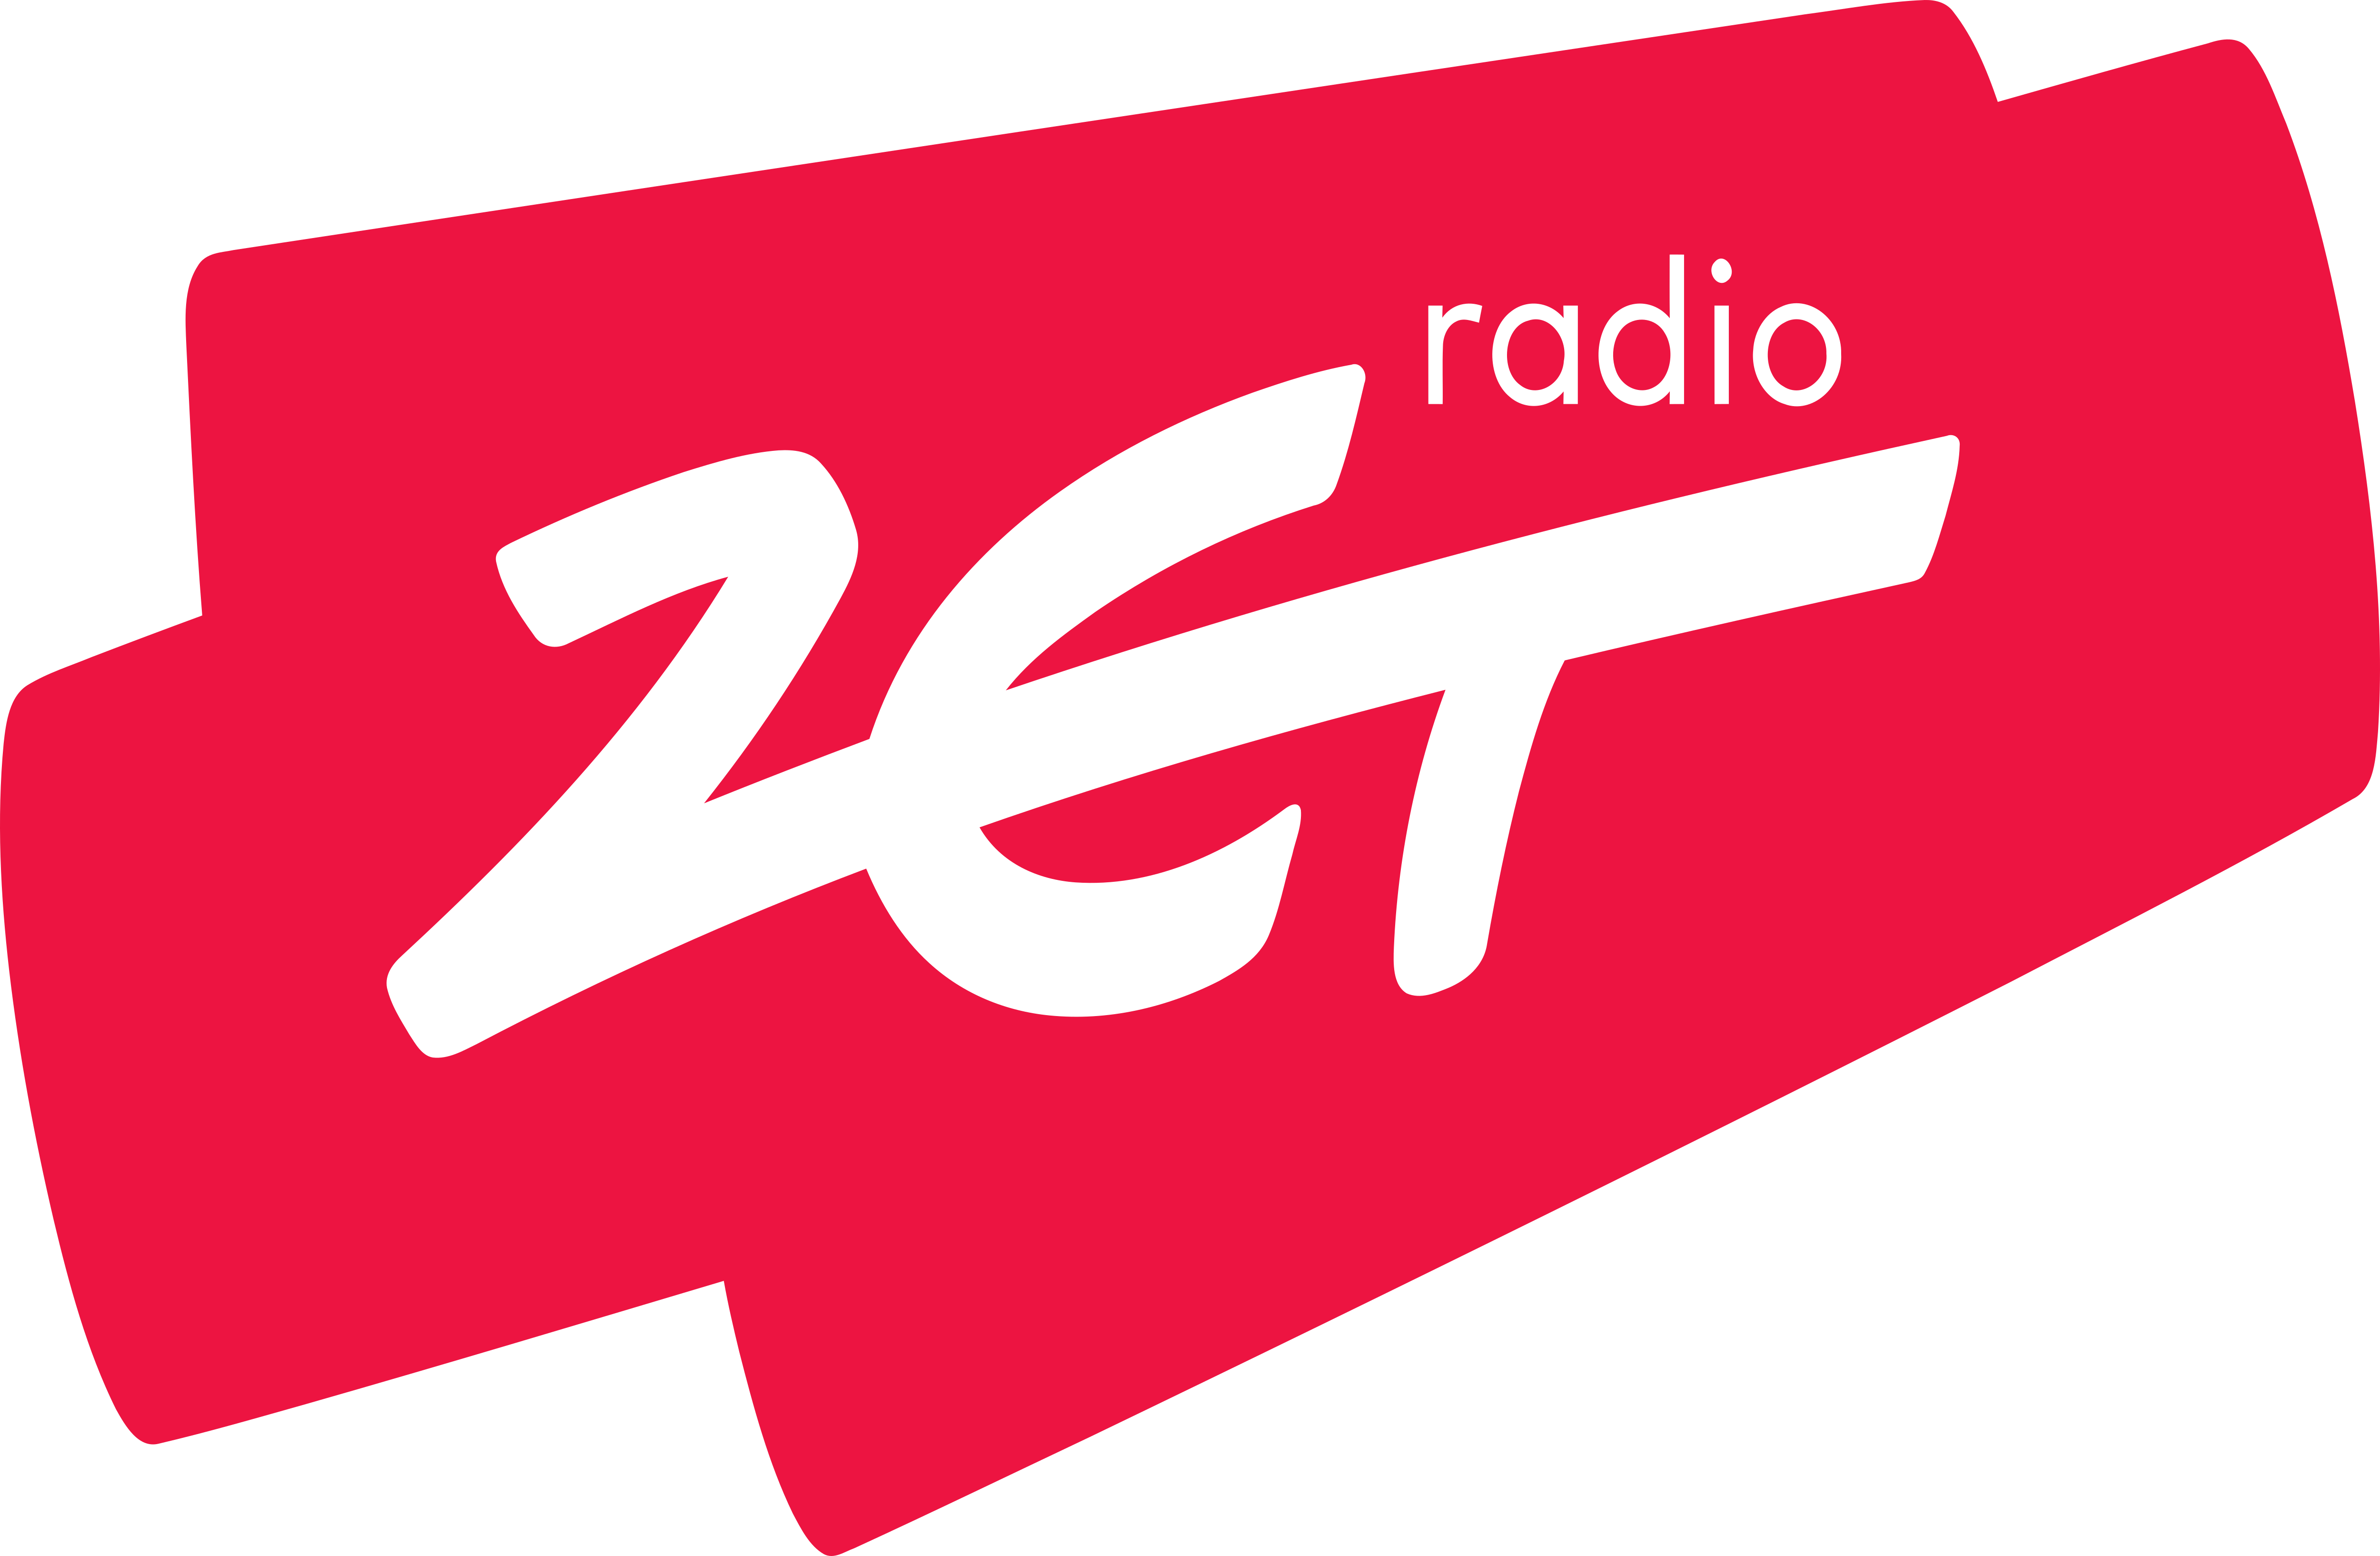 Логотип Зет. Значок zet. Логотип компании zet Gaming. Zet новый логотип.